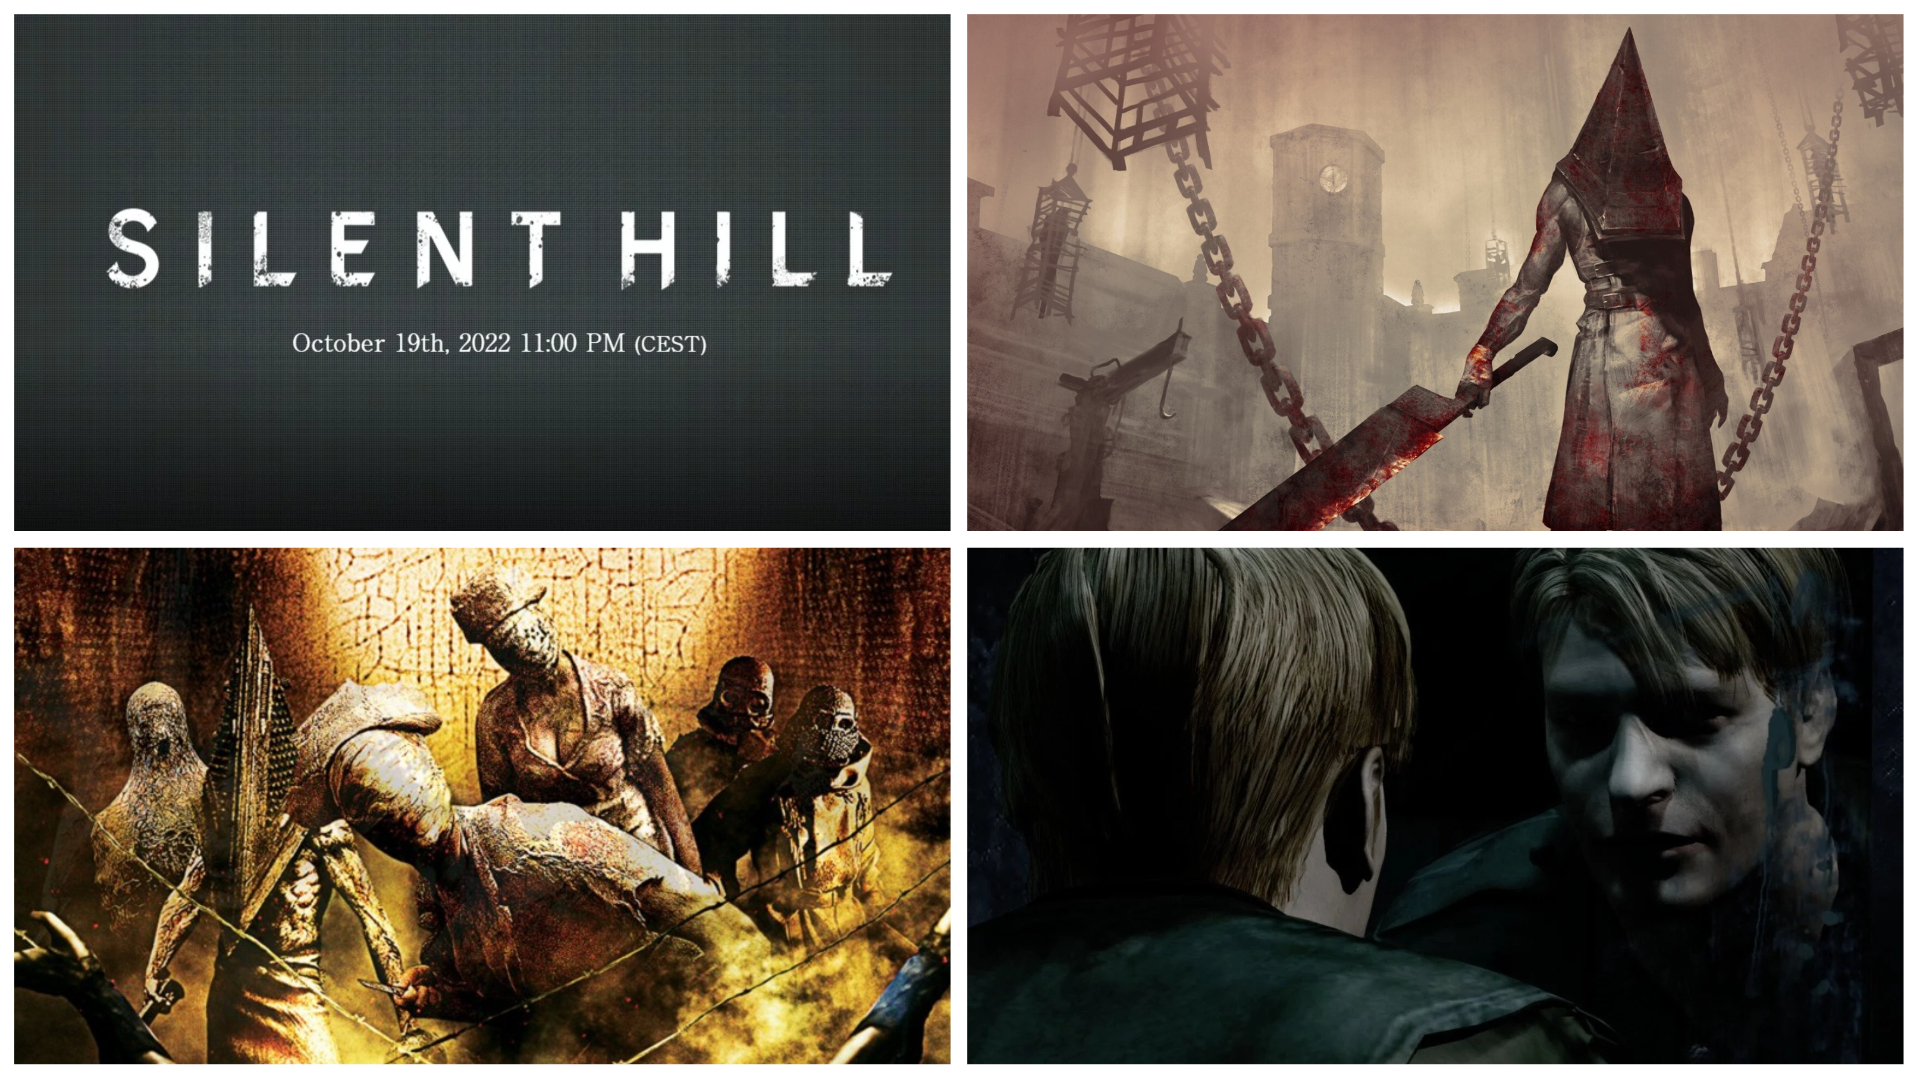 Transmissão ao vivo de Silent Hill: horário de início, como assistir e detalhes